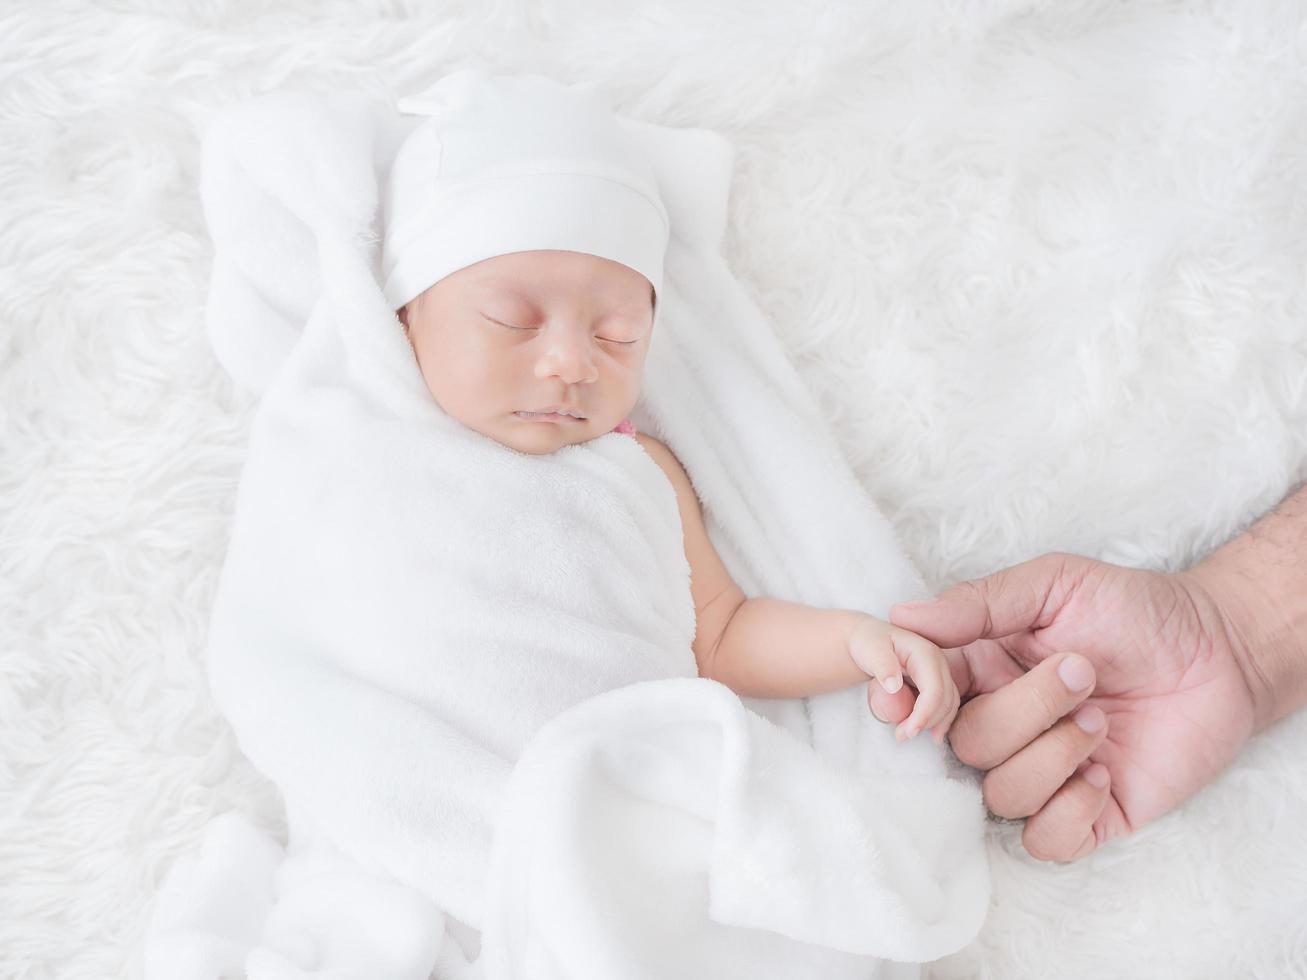 la petite fille nouveau-née dort chaleureusement sur le tissu blanc et a touché la main de son père avec amour photo